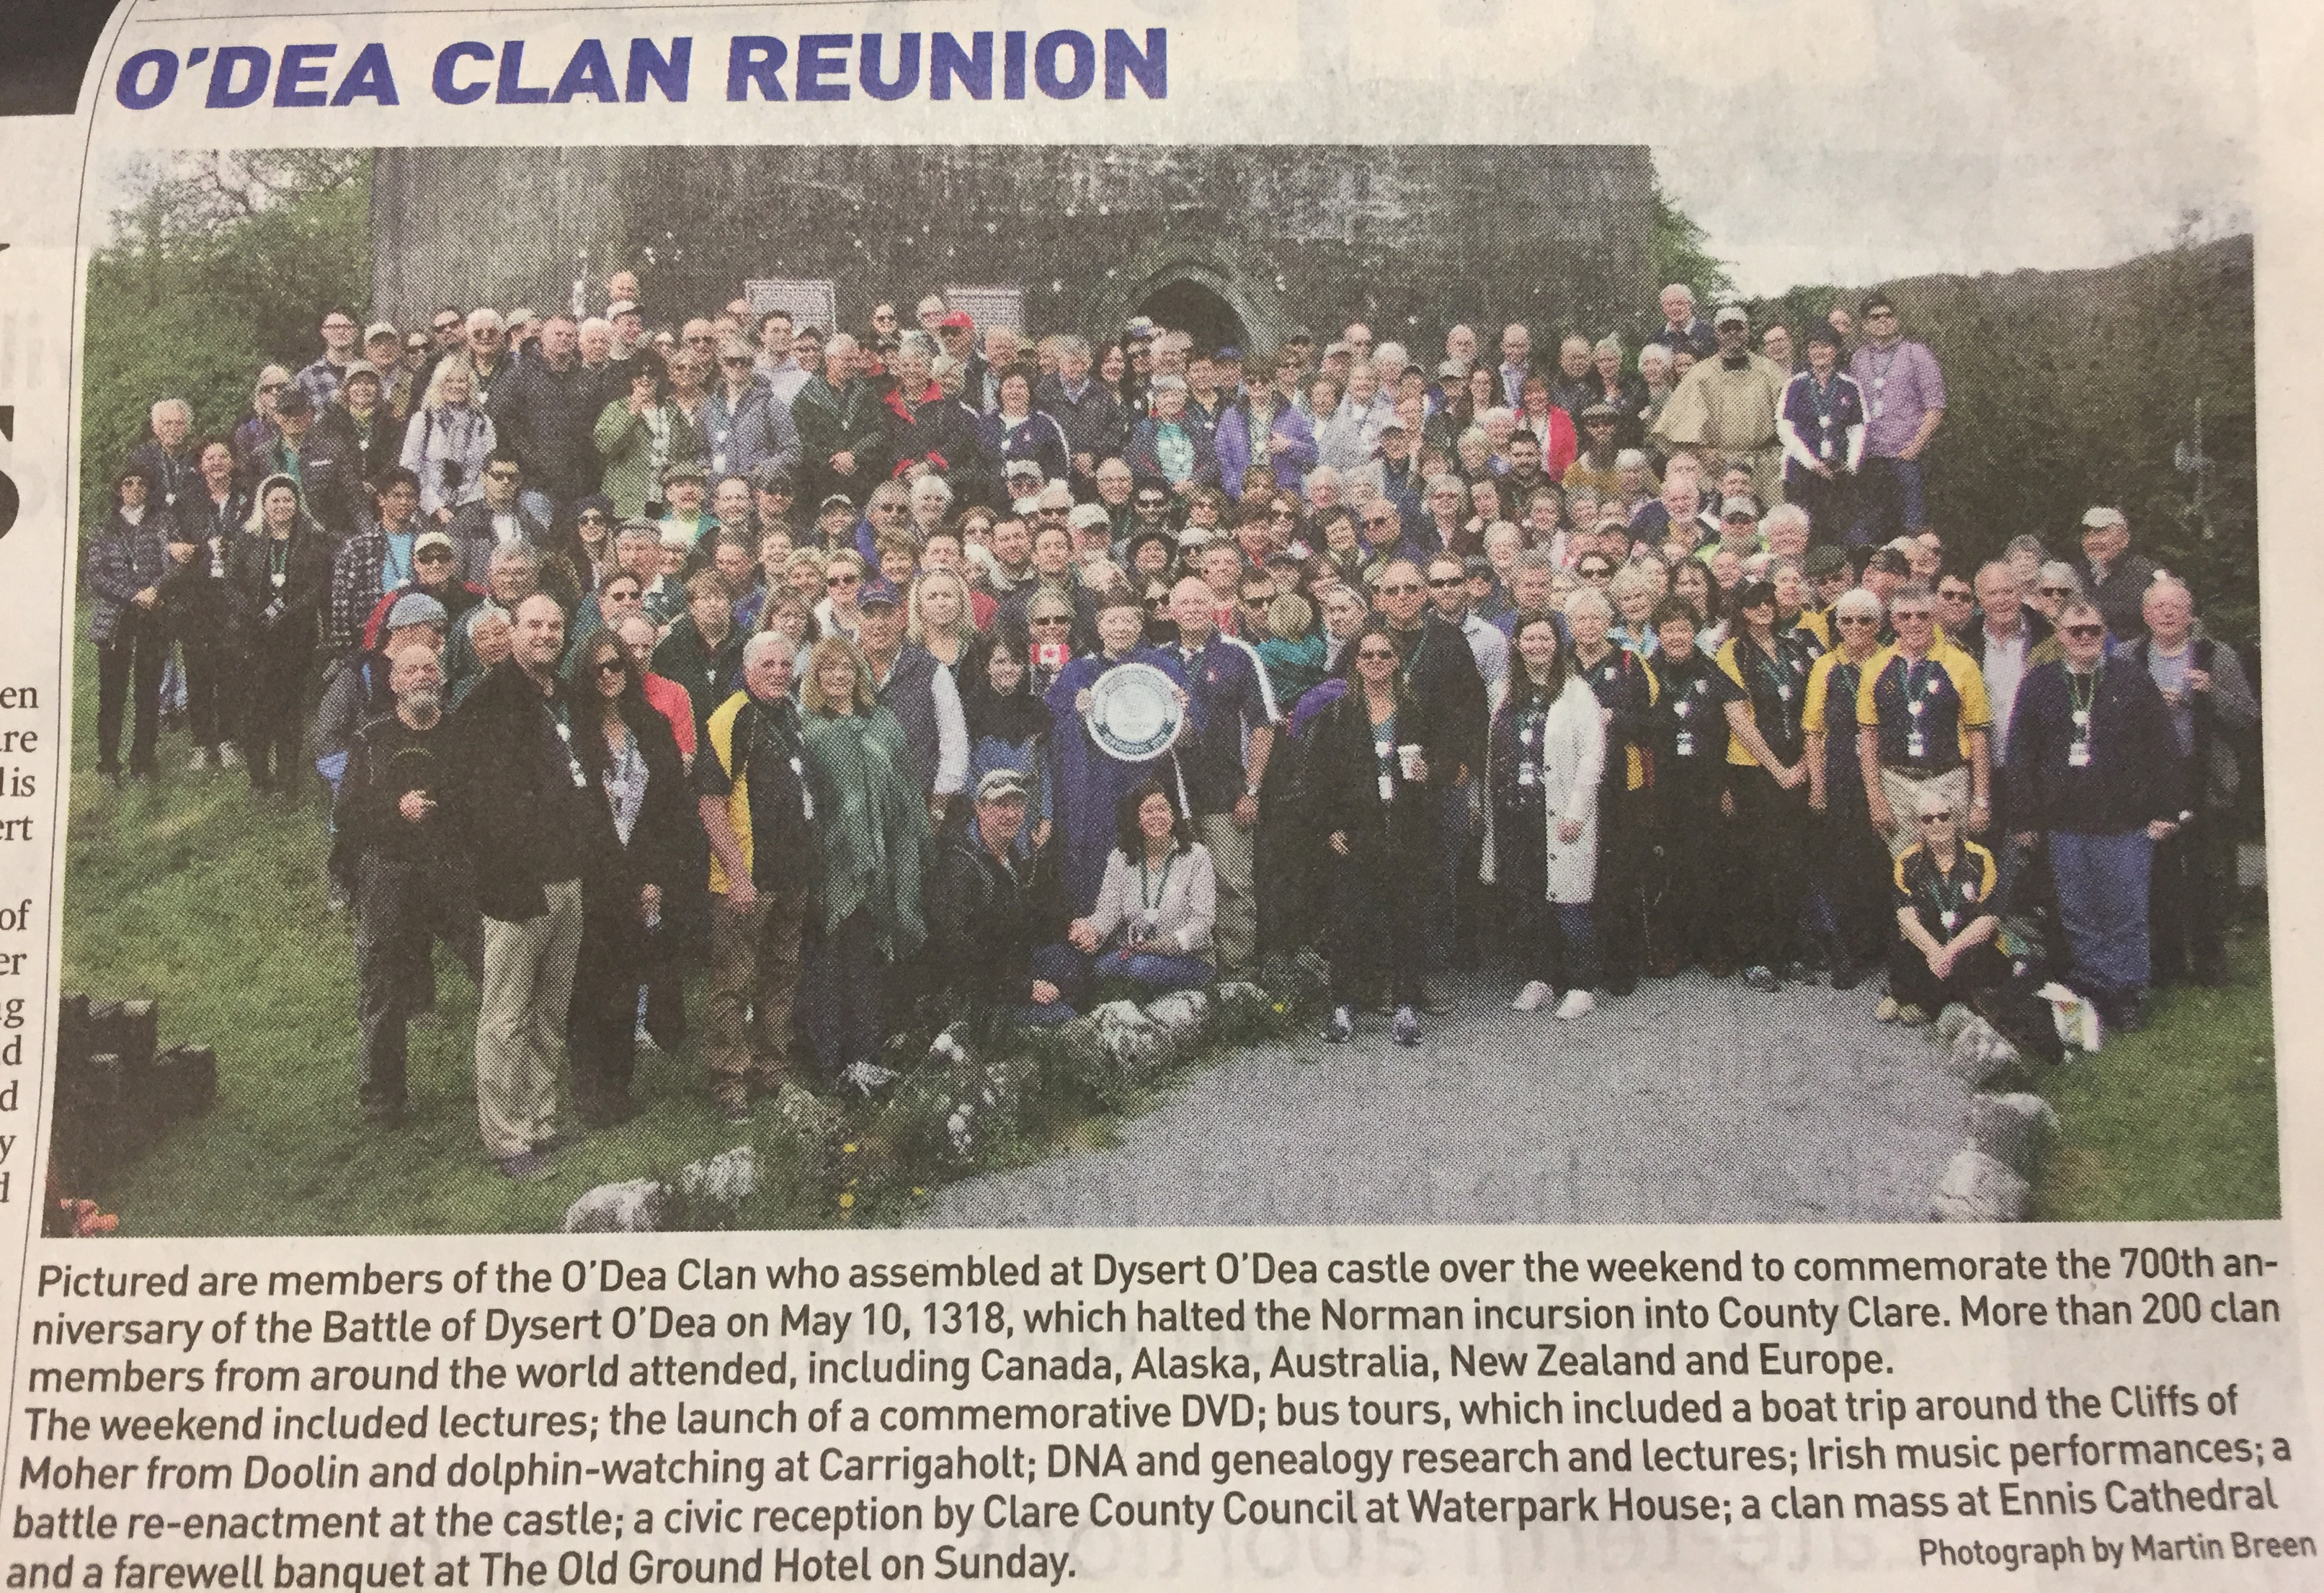 O'Dea Clan Reunion - News Report